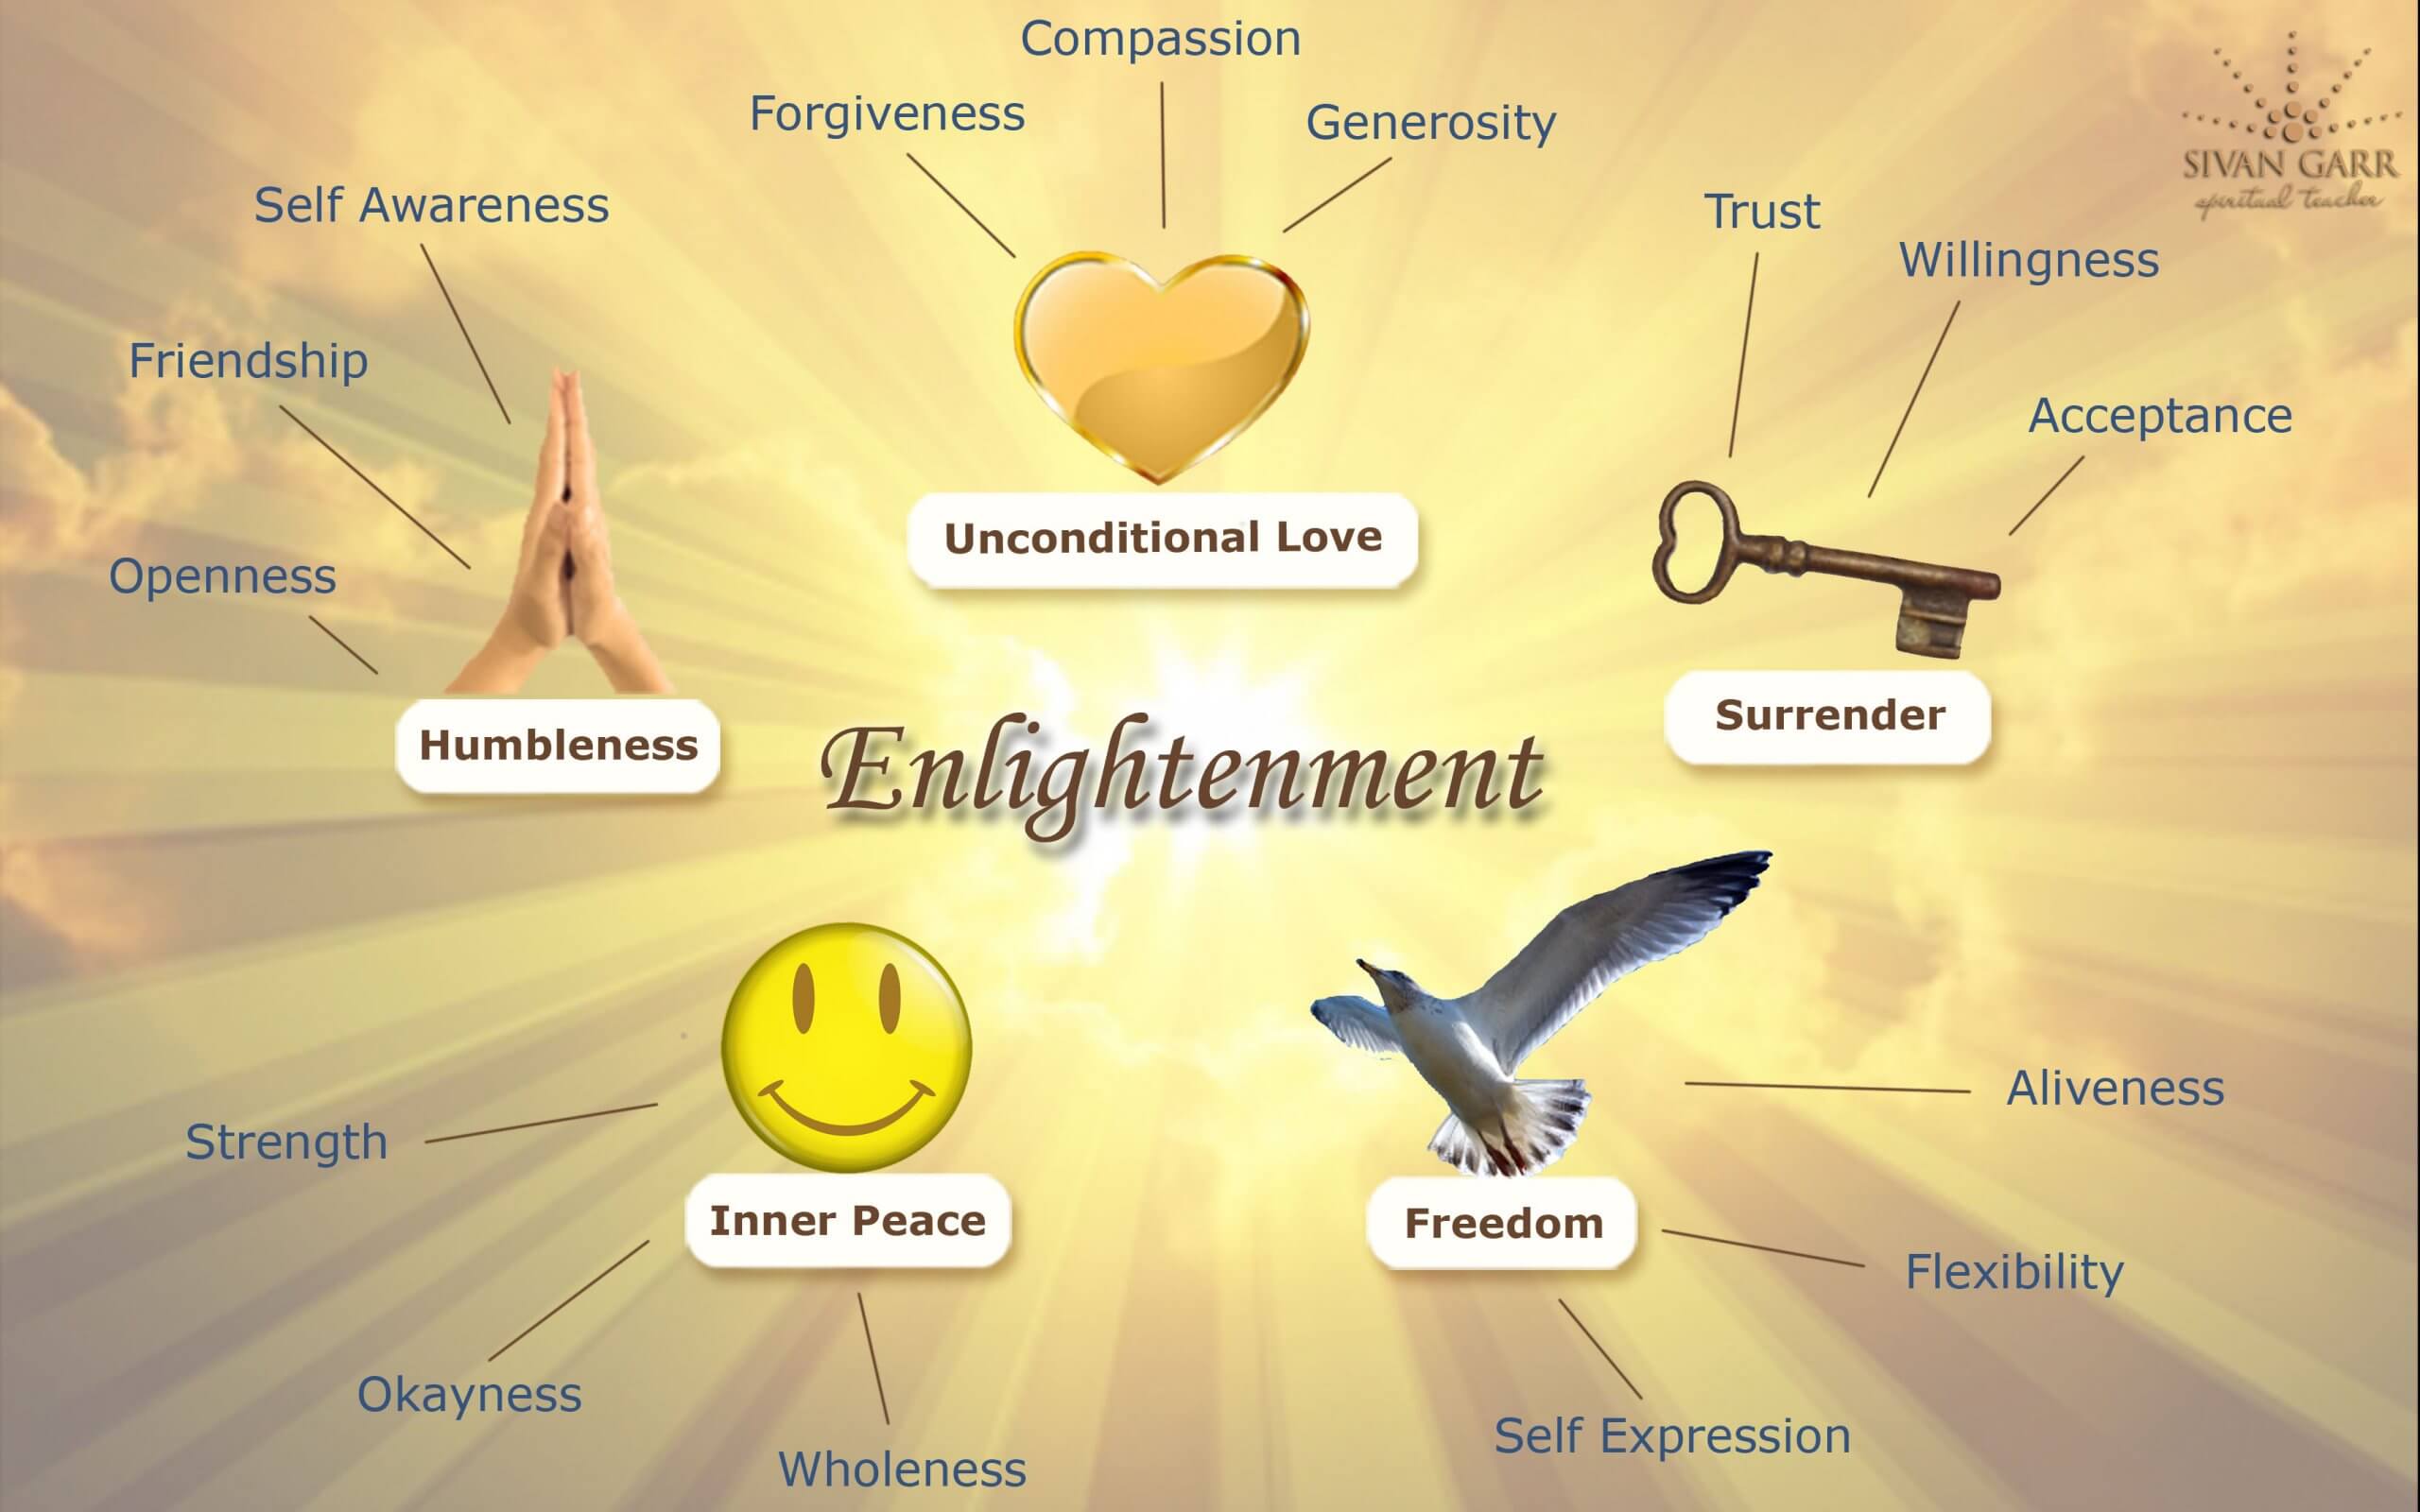 Sivan Garr - The Qualities of Enlightenment - Free Download